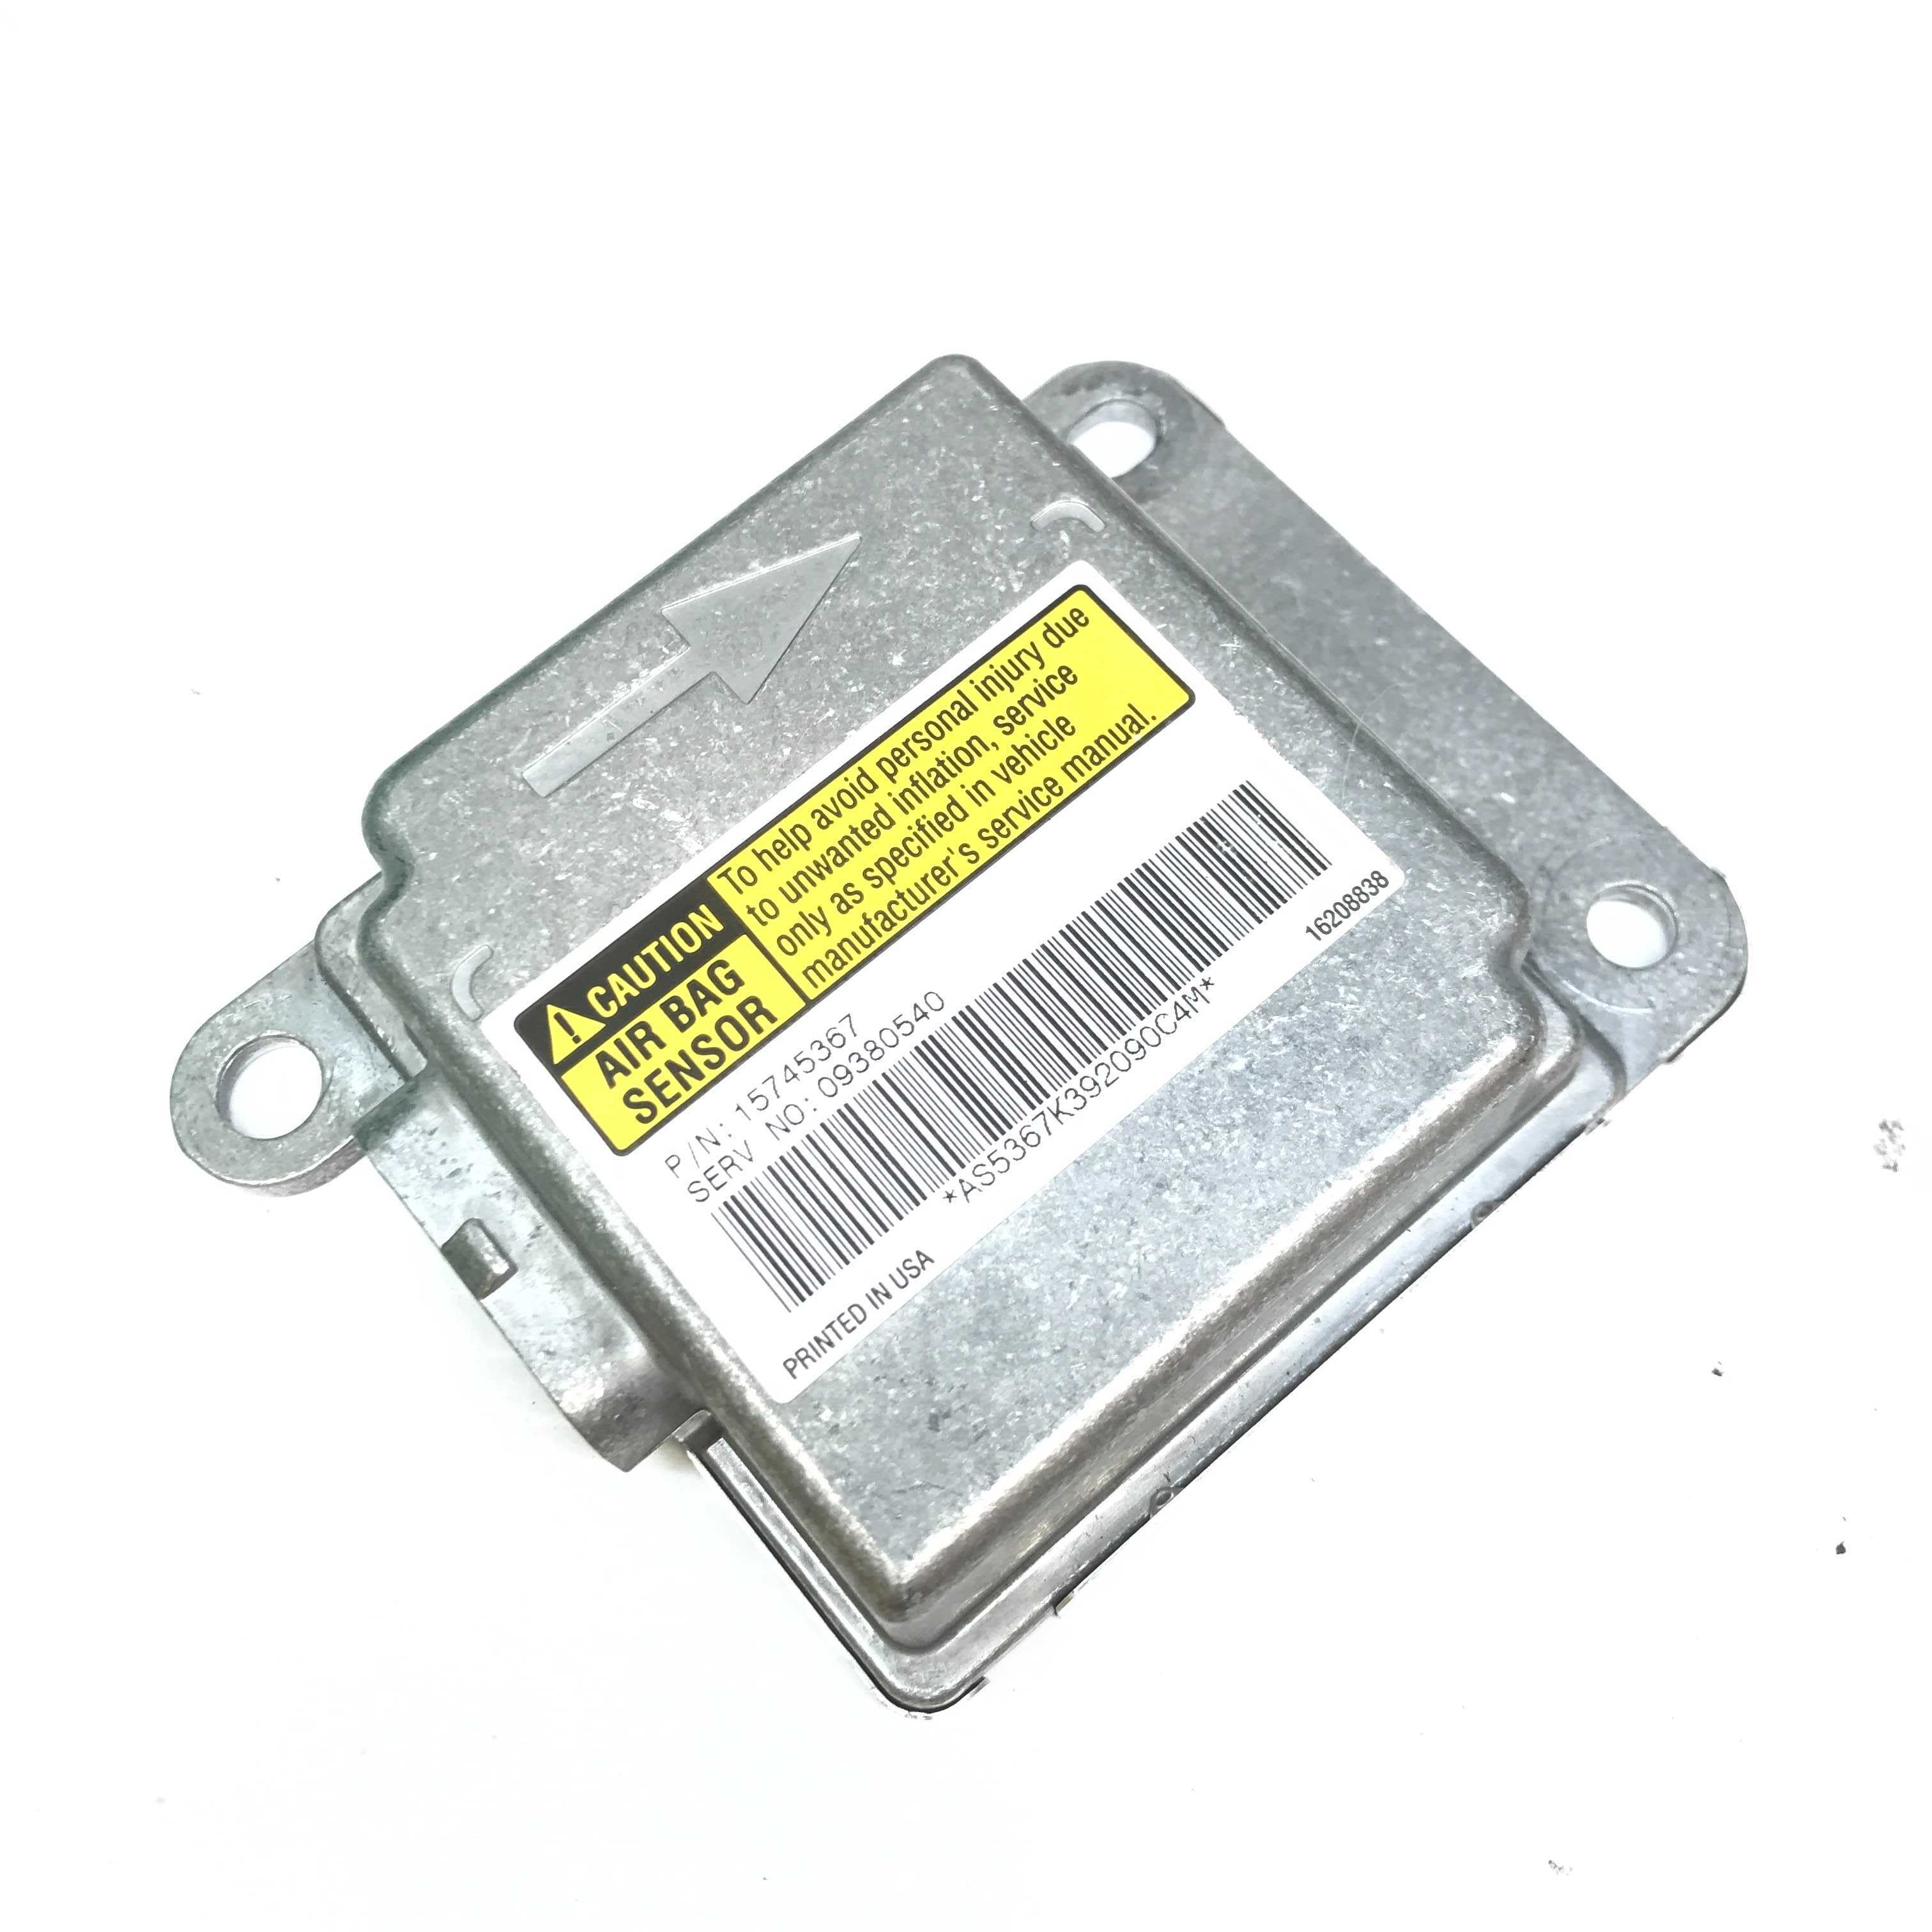 CHEVROLET S-10 SRS SDM DERM Sensing Diagnostic Module - Airbag Computer Control Module PART #15745367